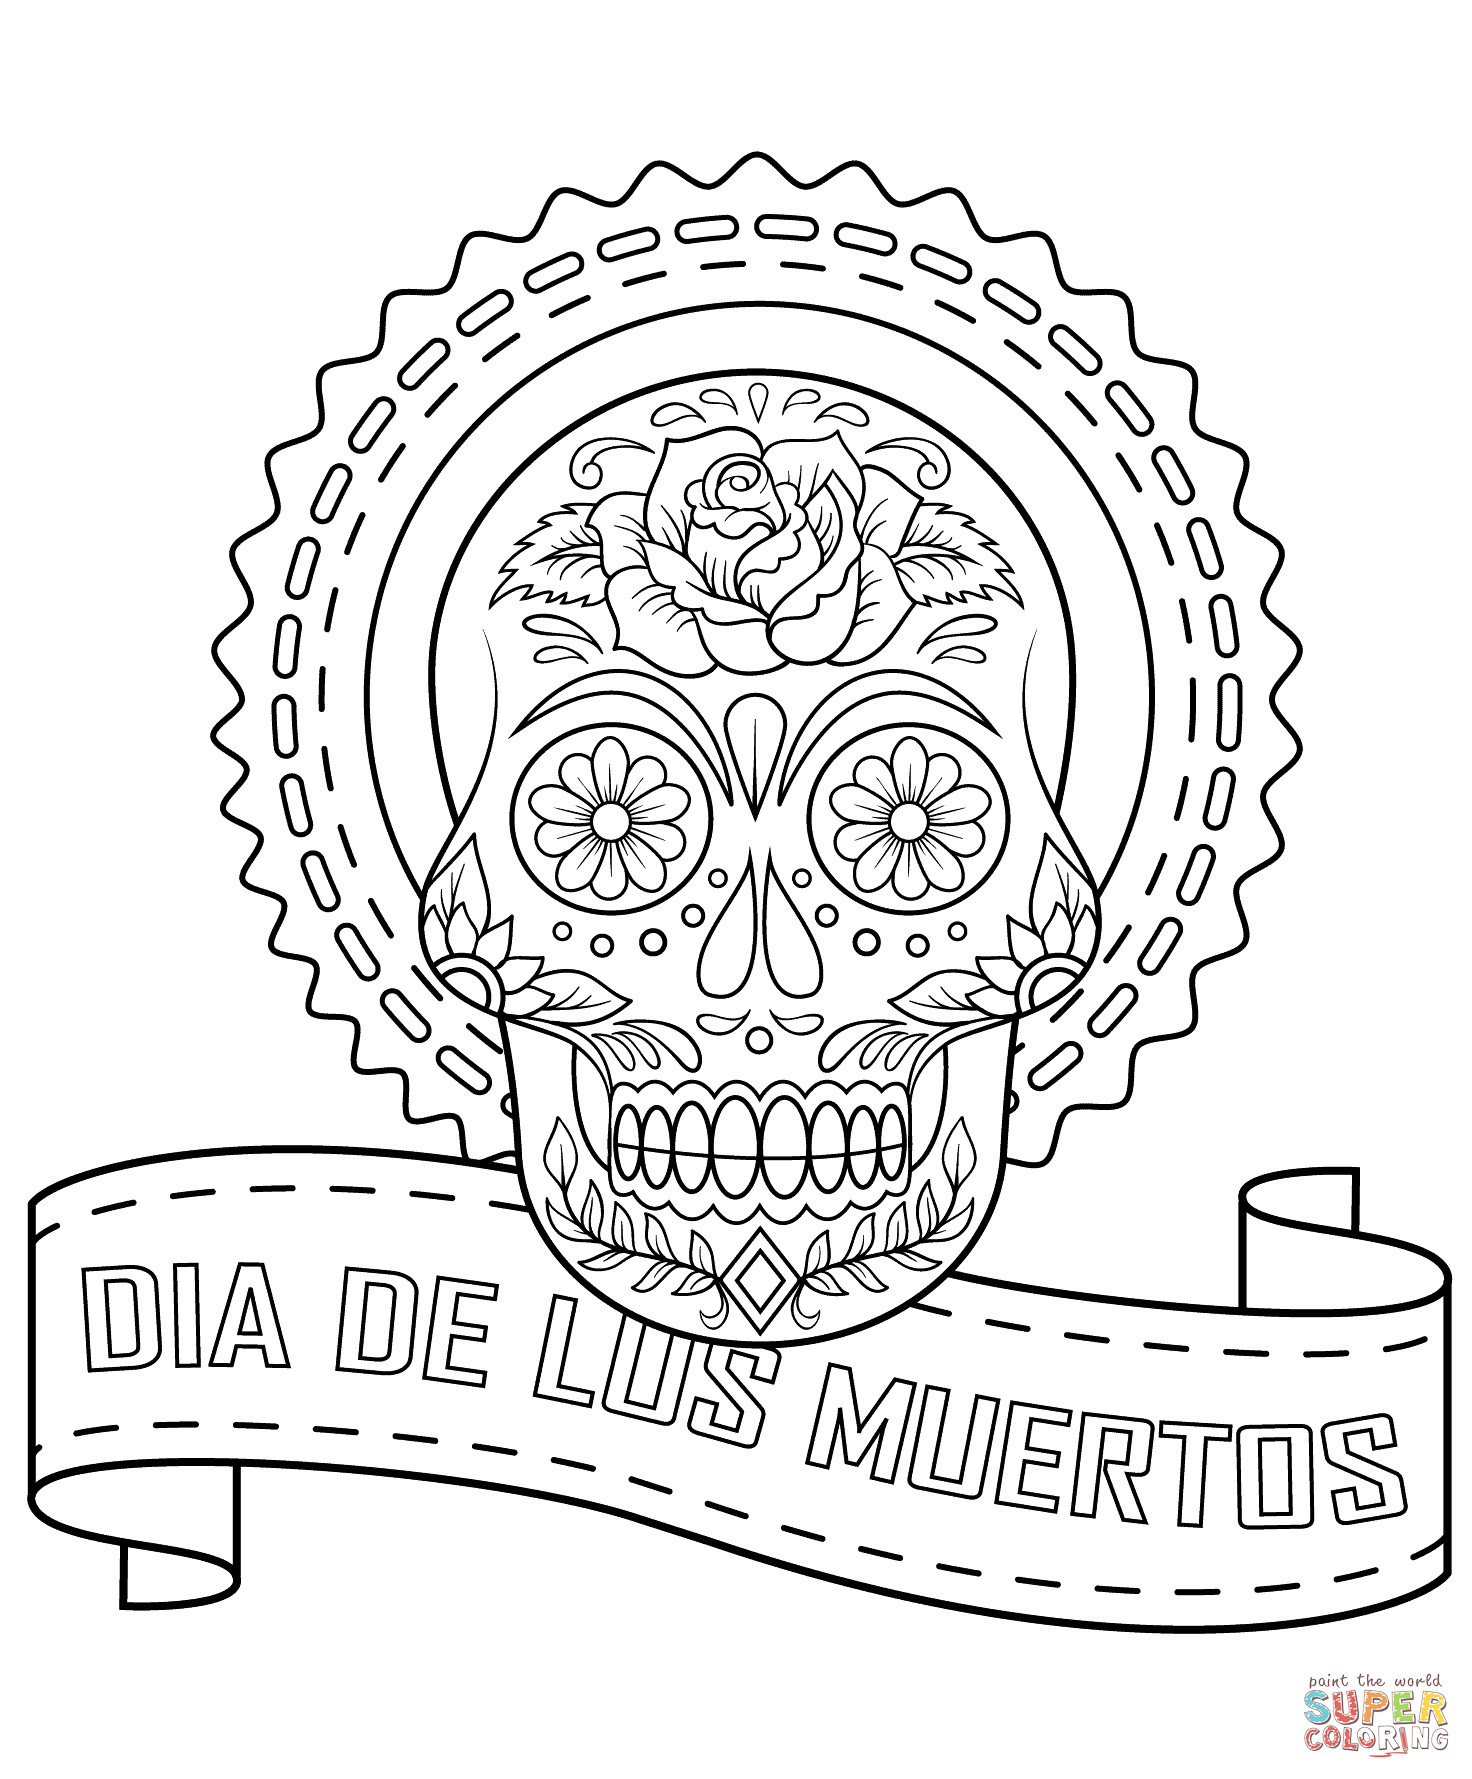 Dia De Los Muertos Coloring Pages
 Dia De Los Muertos Sugar Skull coloring page